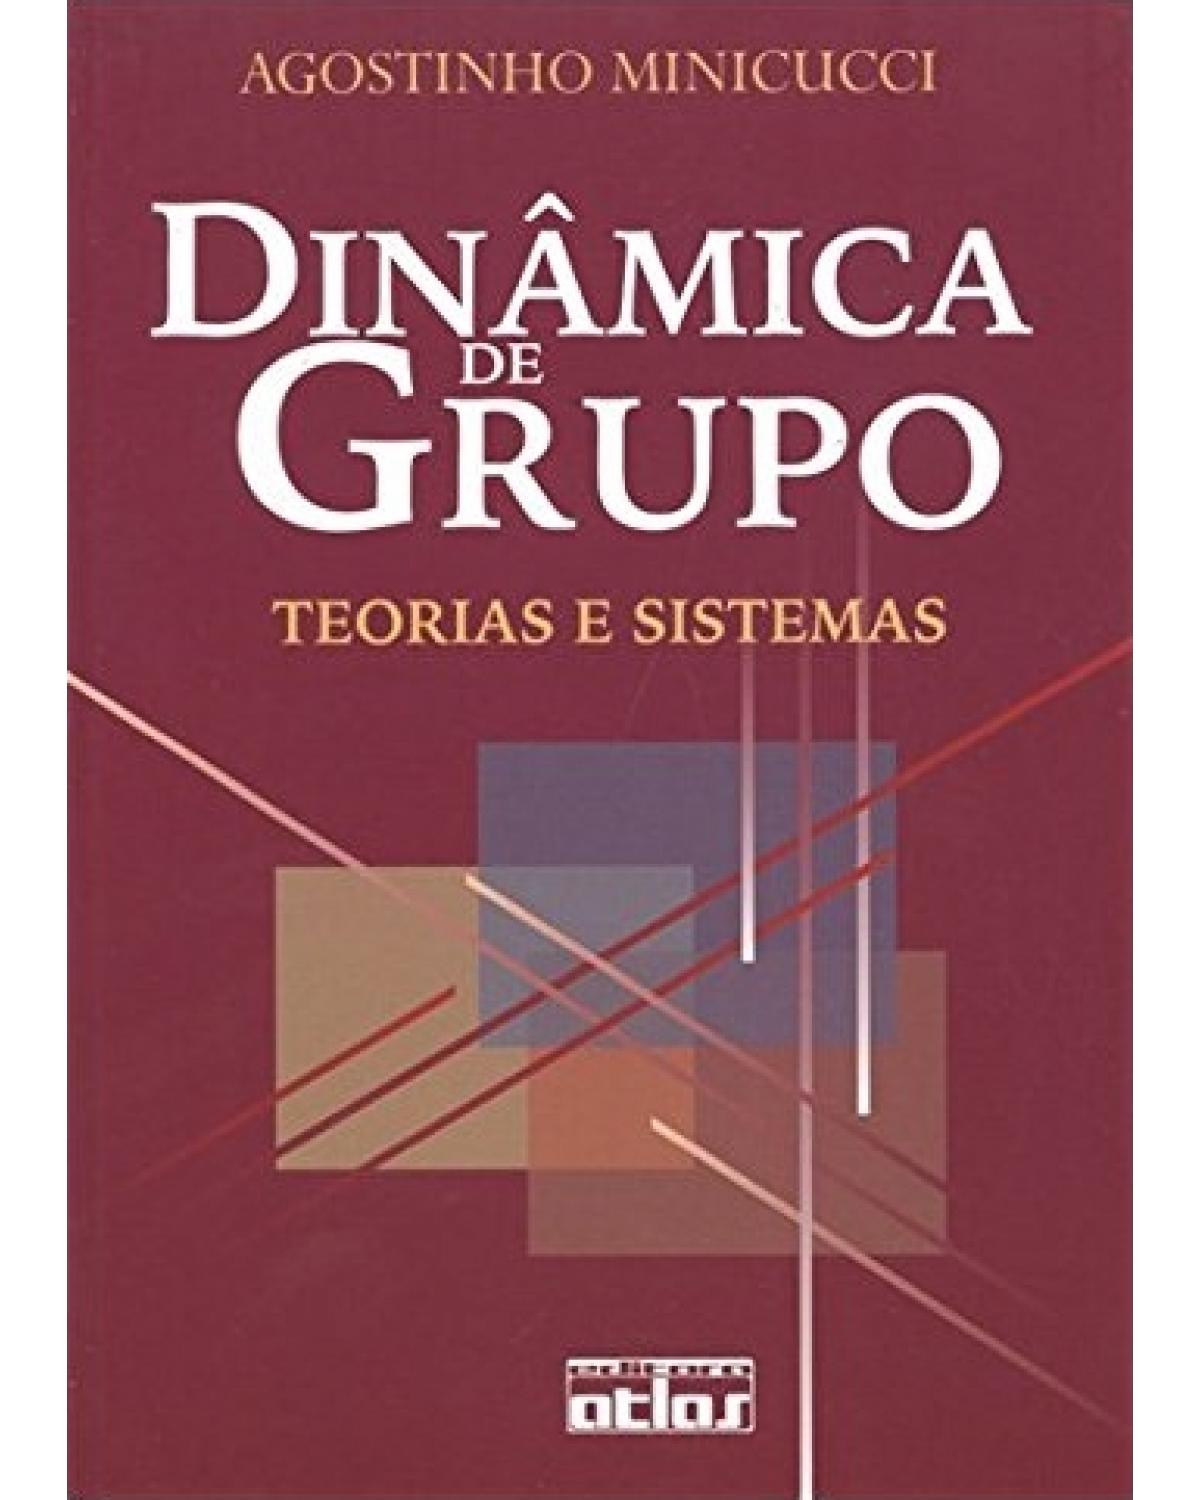 Dinâmica de grupo - Teorias e sistemas - 5ª Edição | 2002